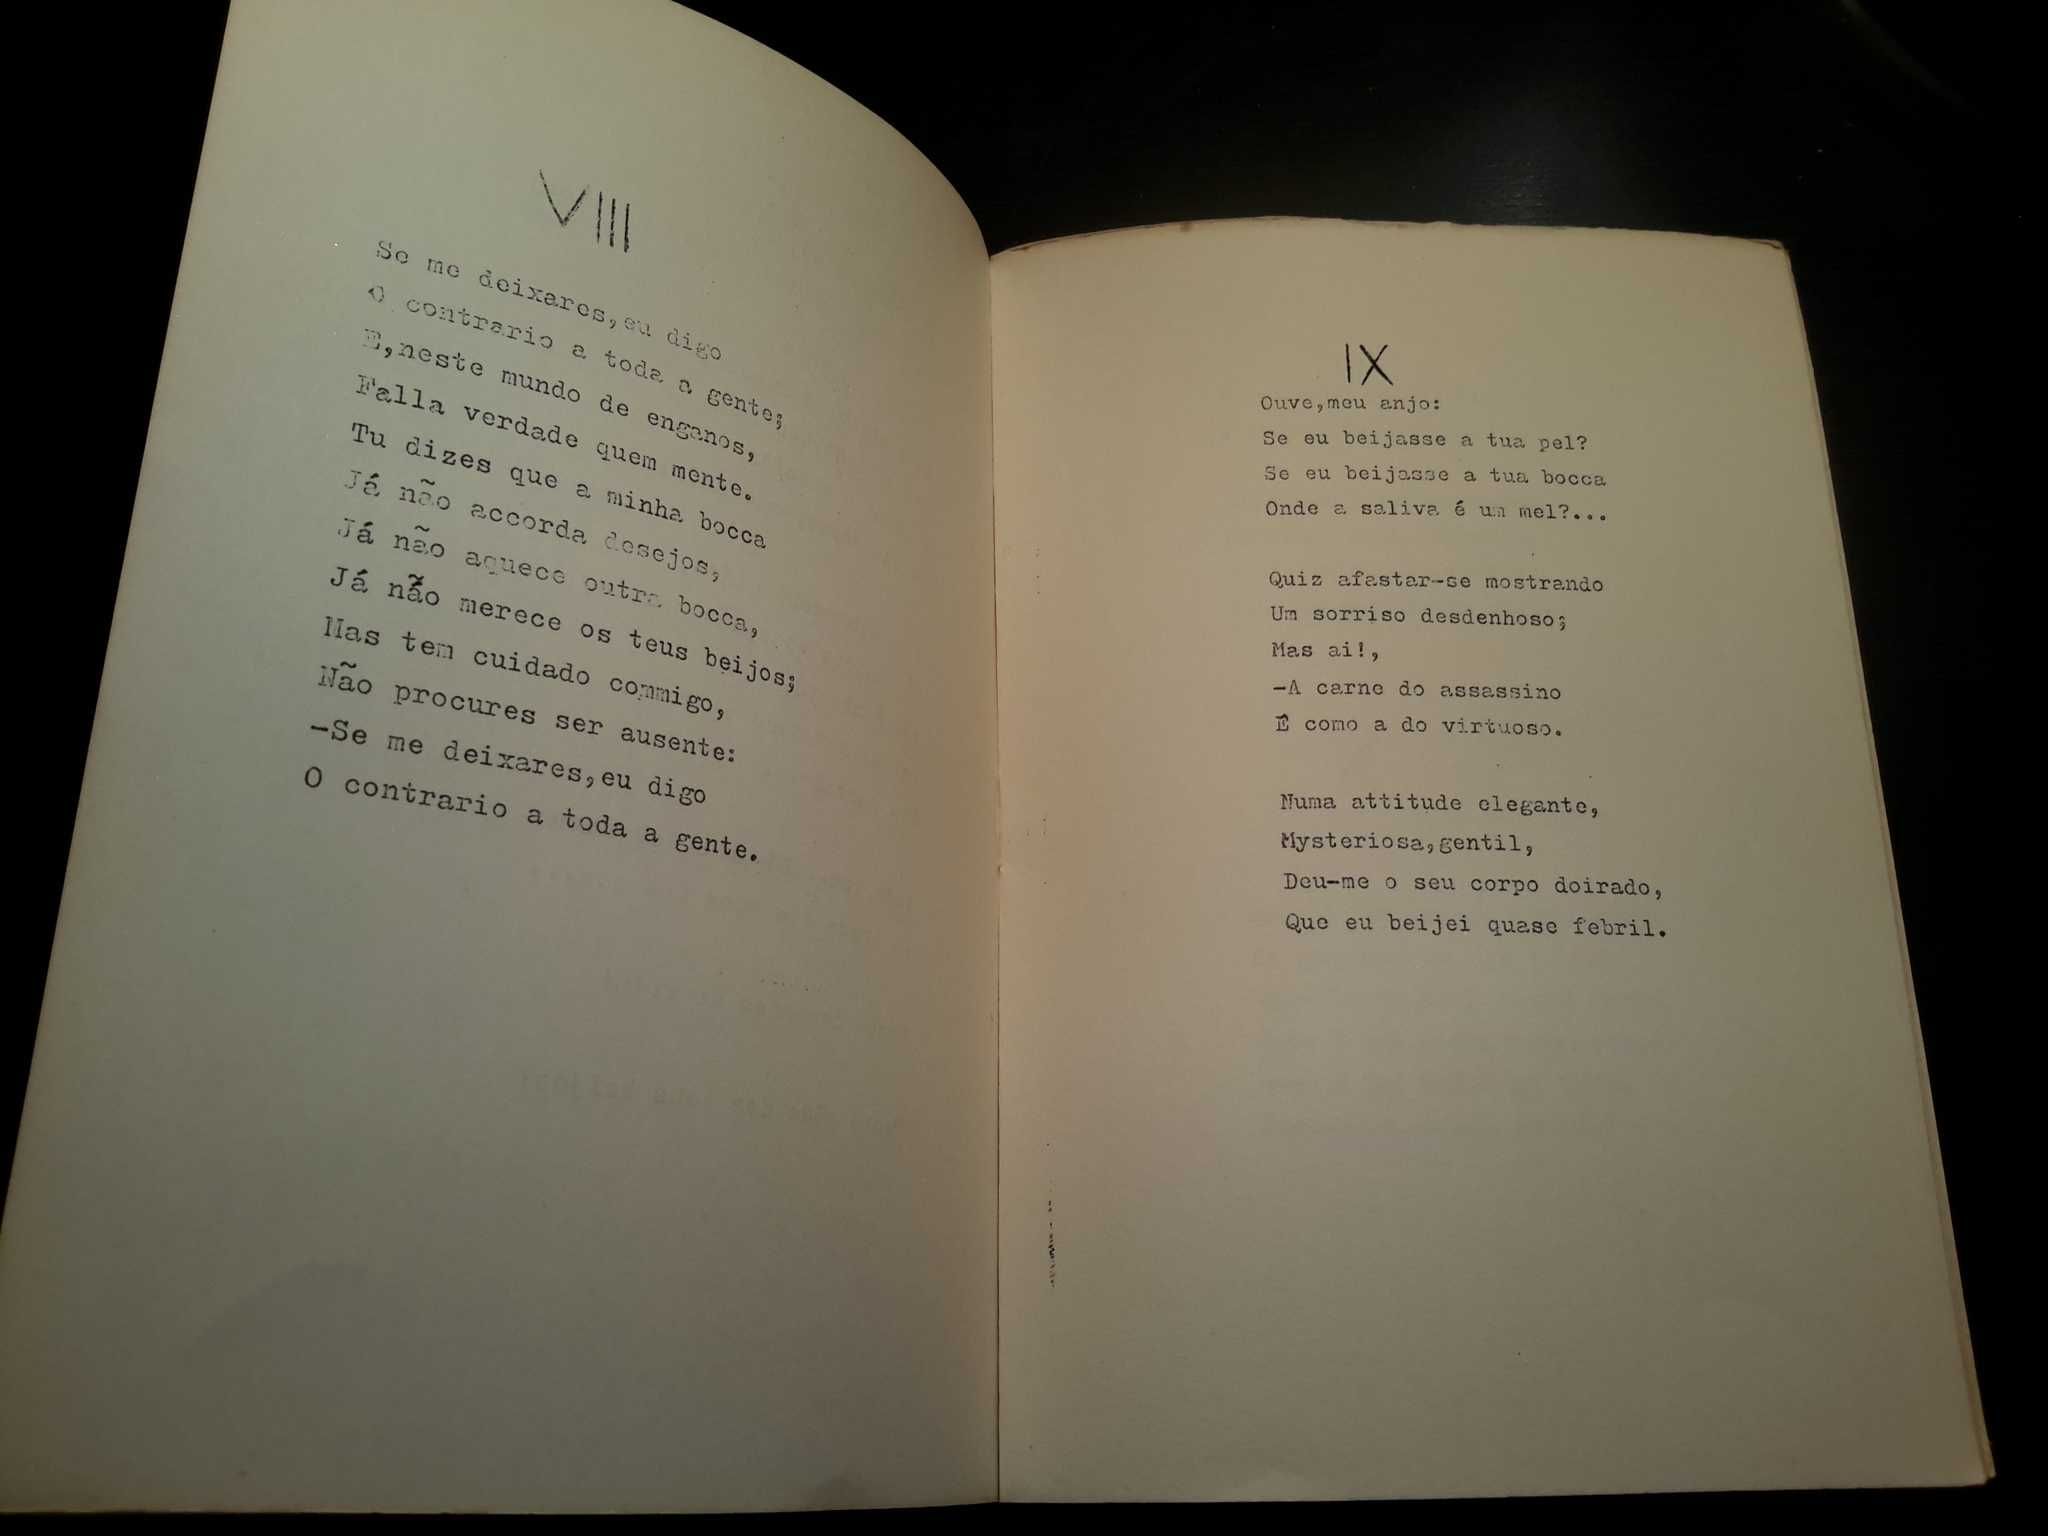 António Botto - Canções (1.ª edição, 1921)